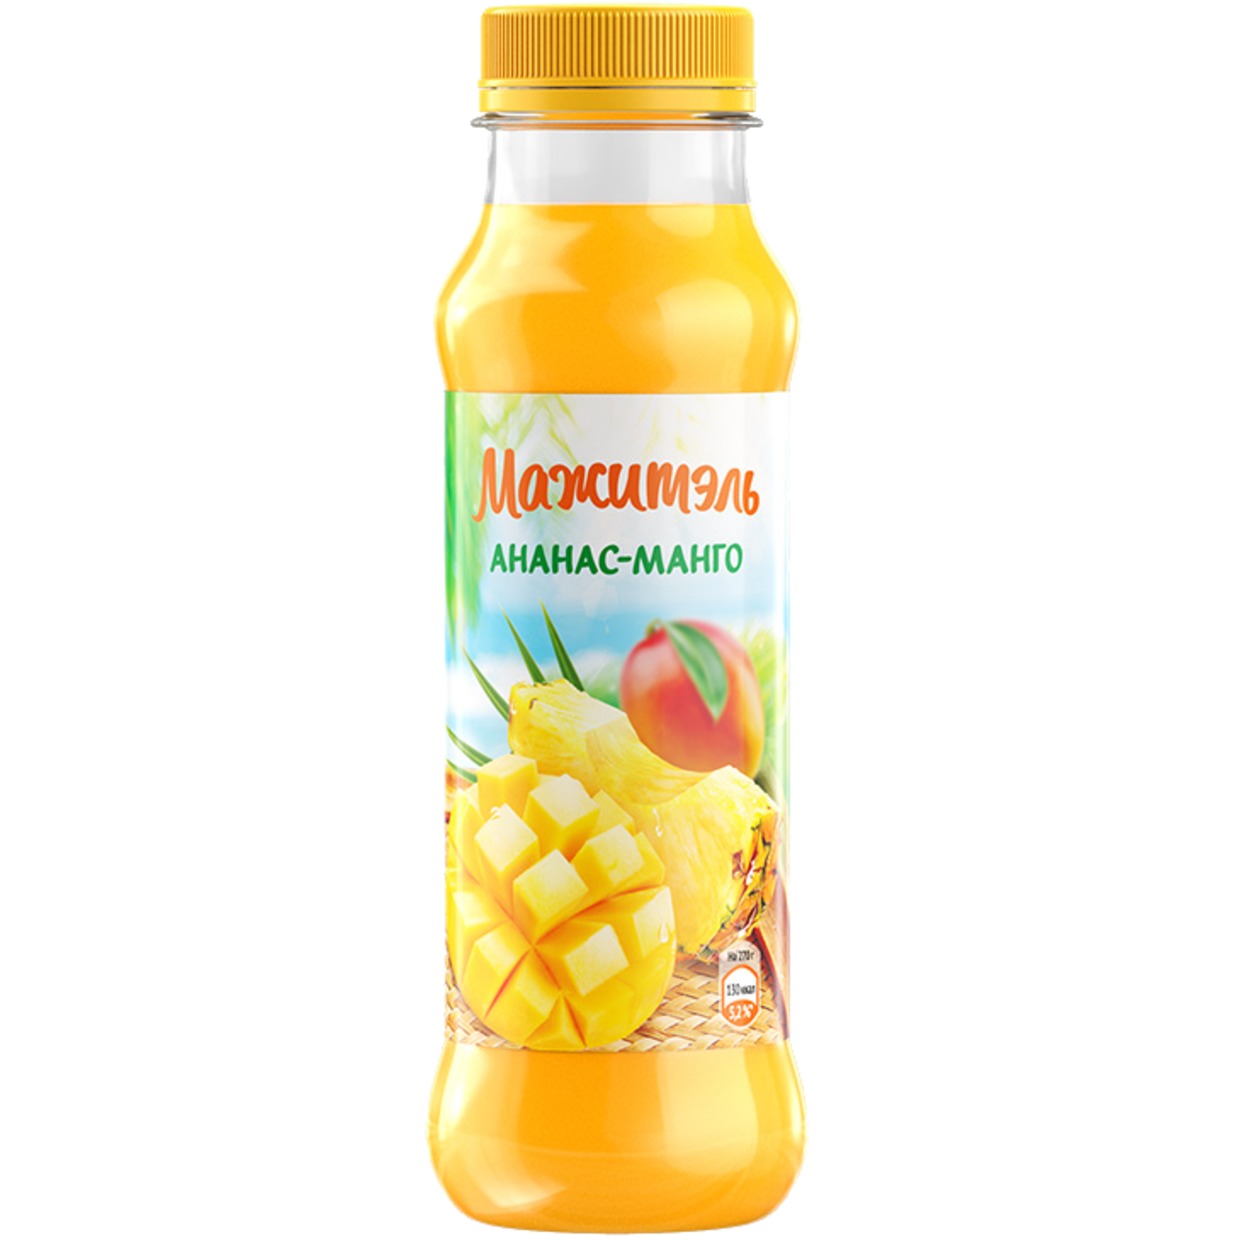 Напиток Мажитэль J7, ананас-манго, 270 г по акции в Пятерочке